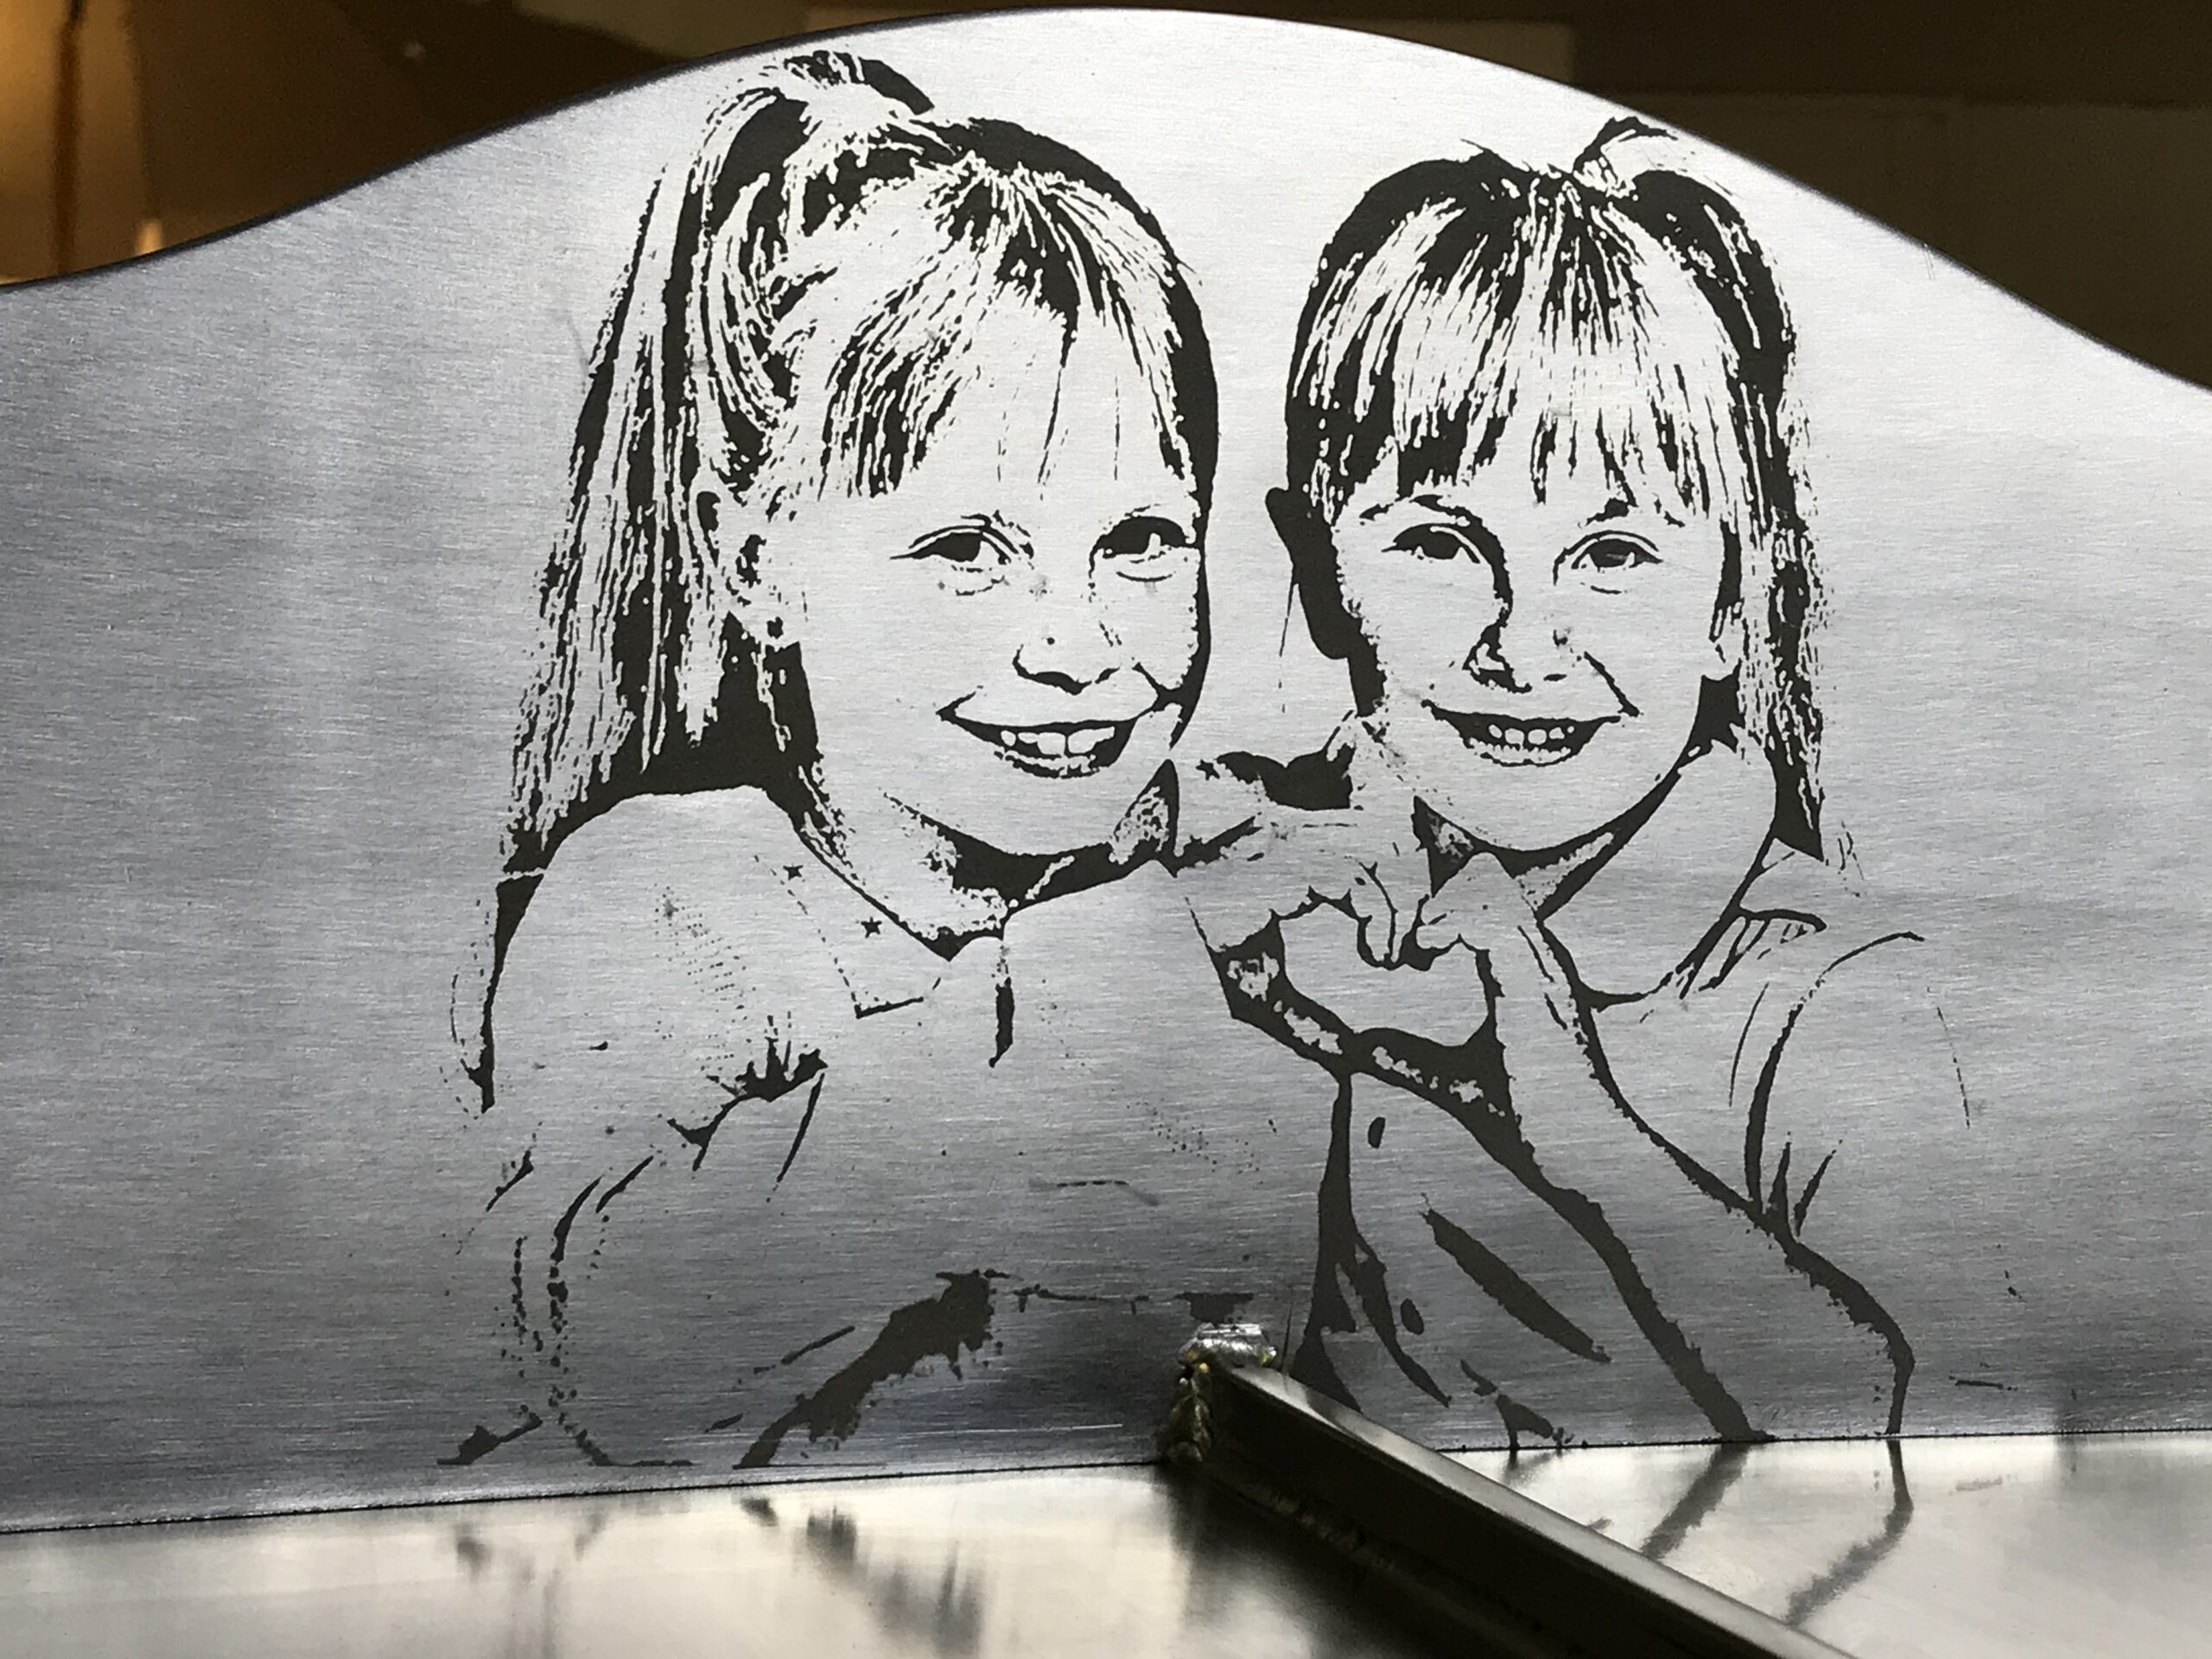 Formengrill mit eingravierter Grafik von 2 jungen Mädchen